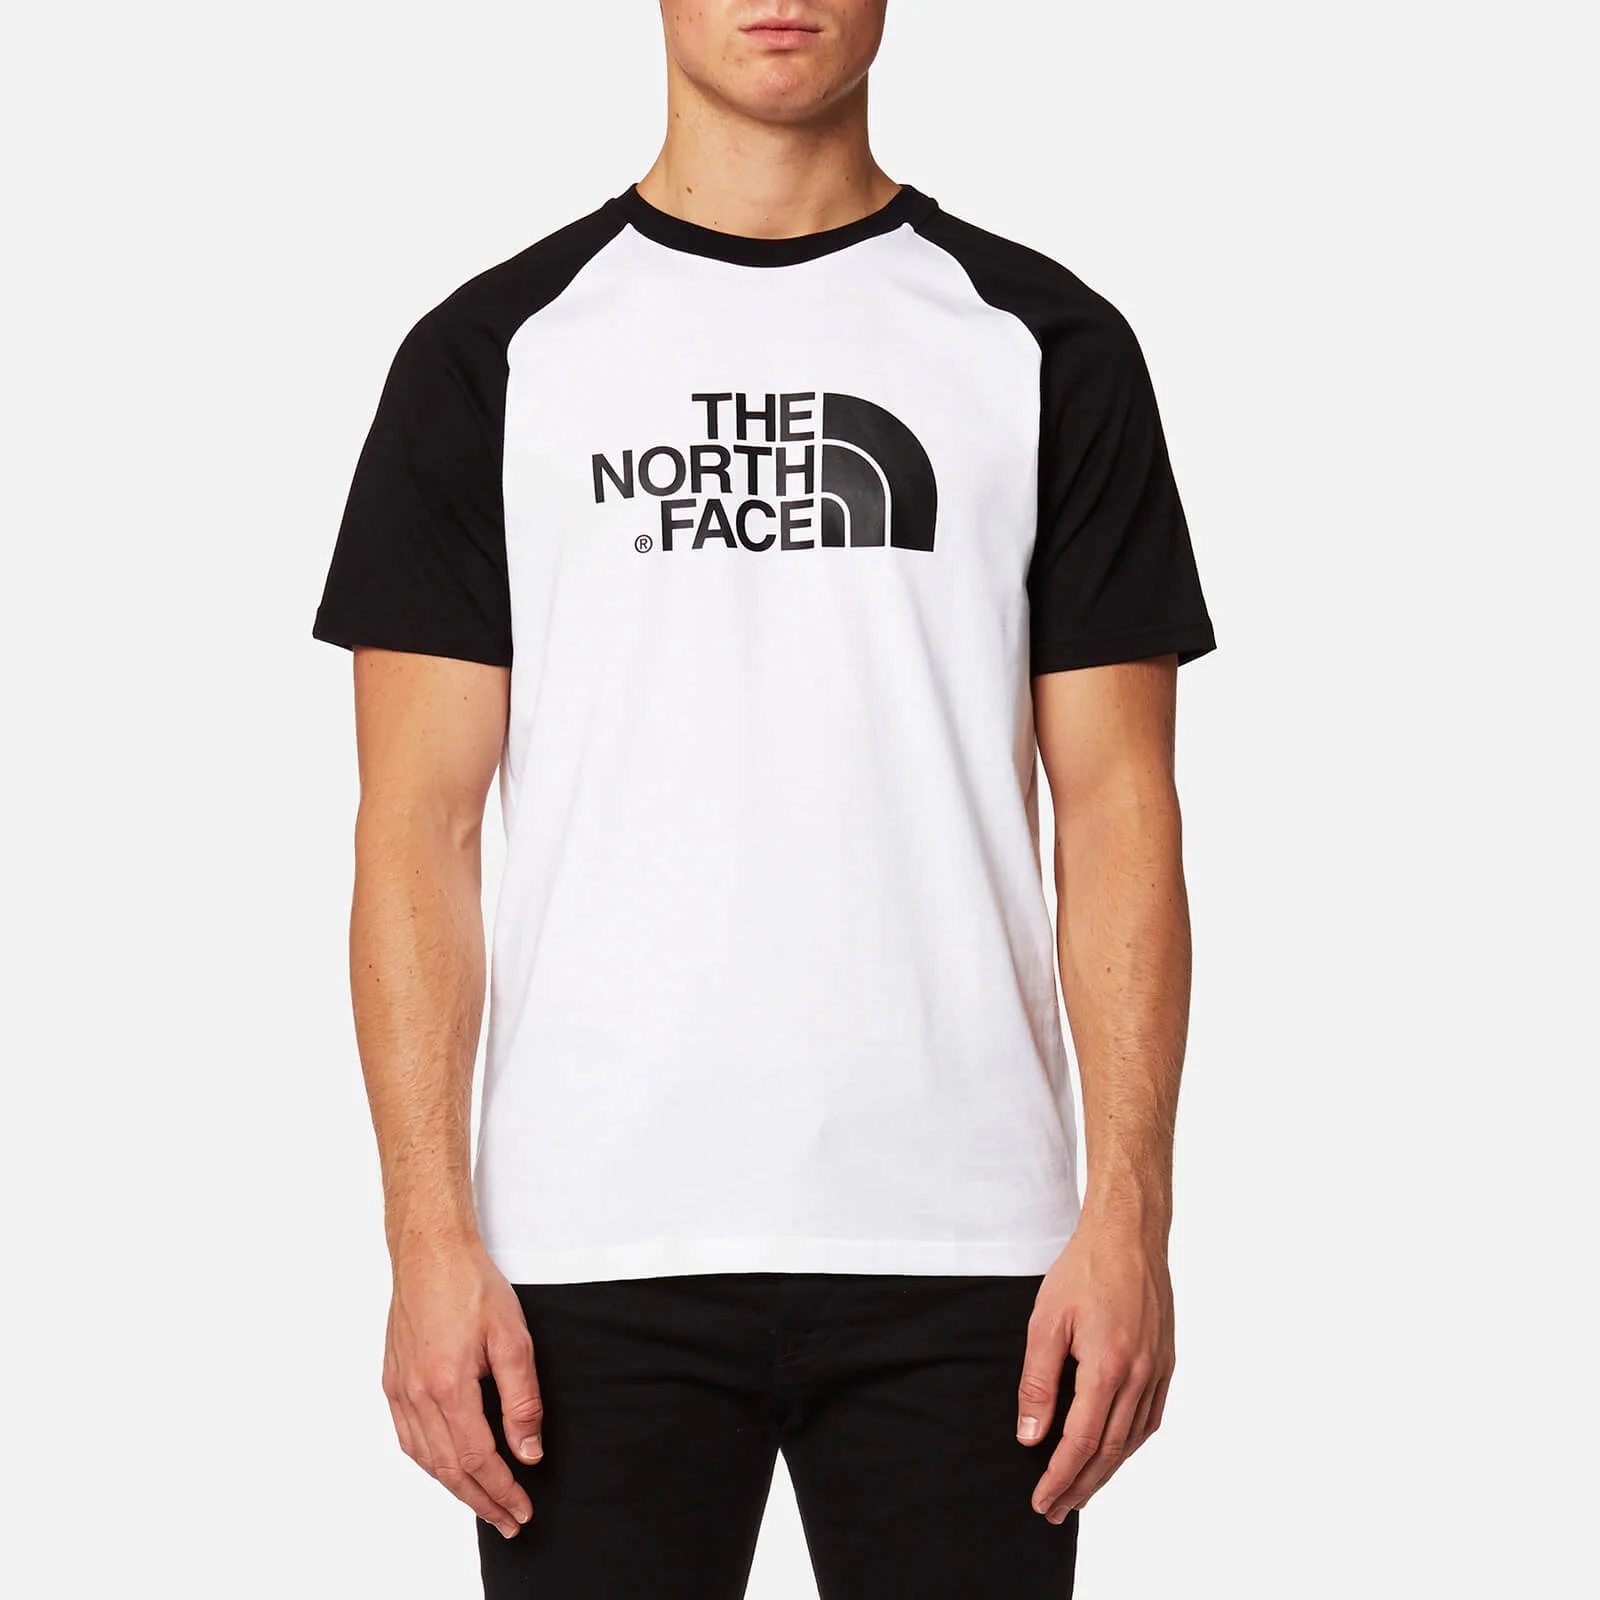 The North Face Men's Raglan Easy Short Sleeve T-Shirt - TNF White/TNF Black Image 1